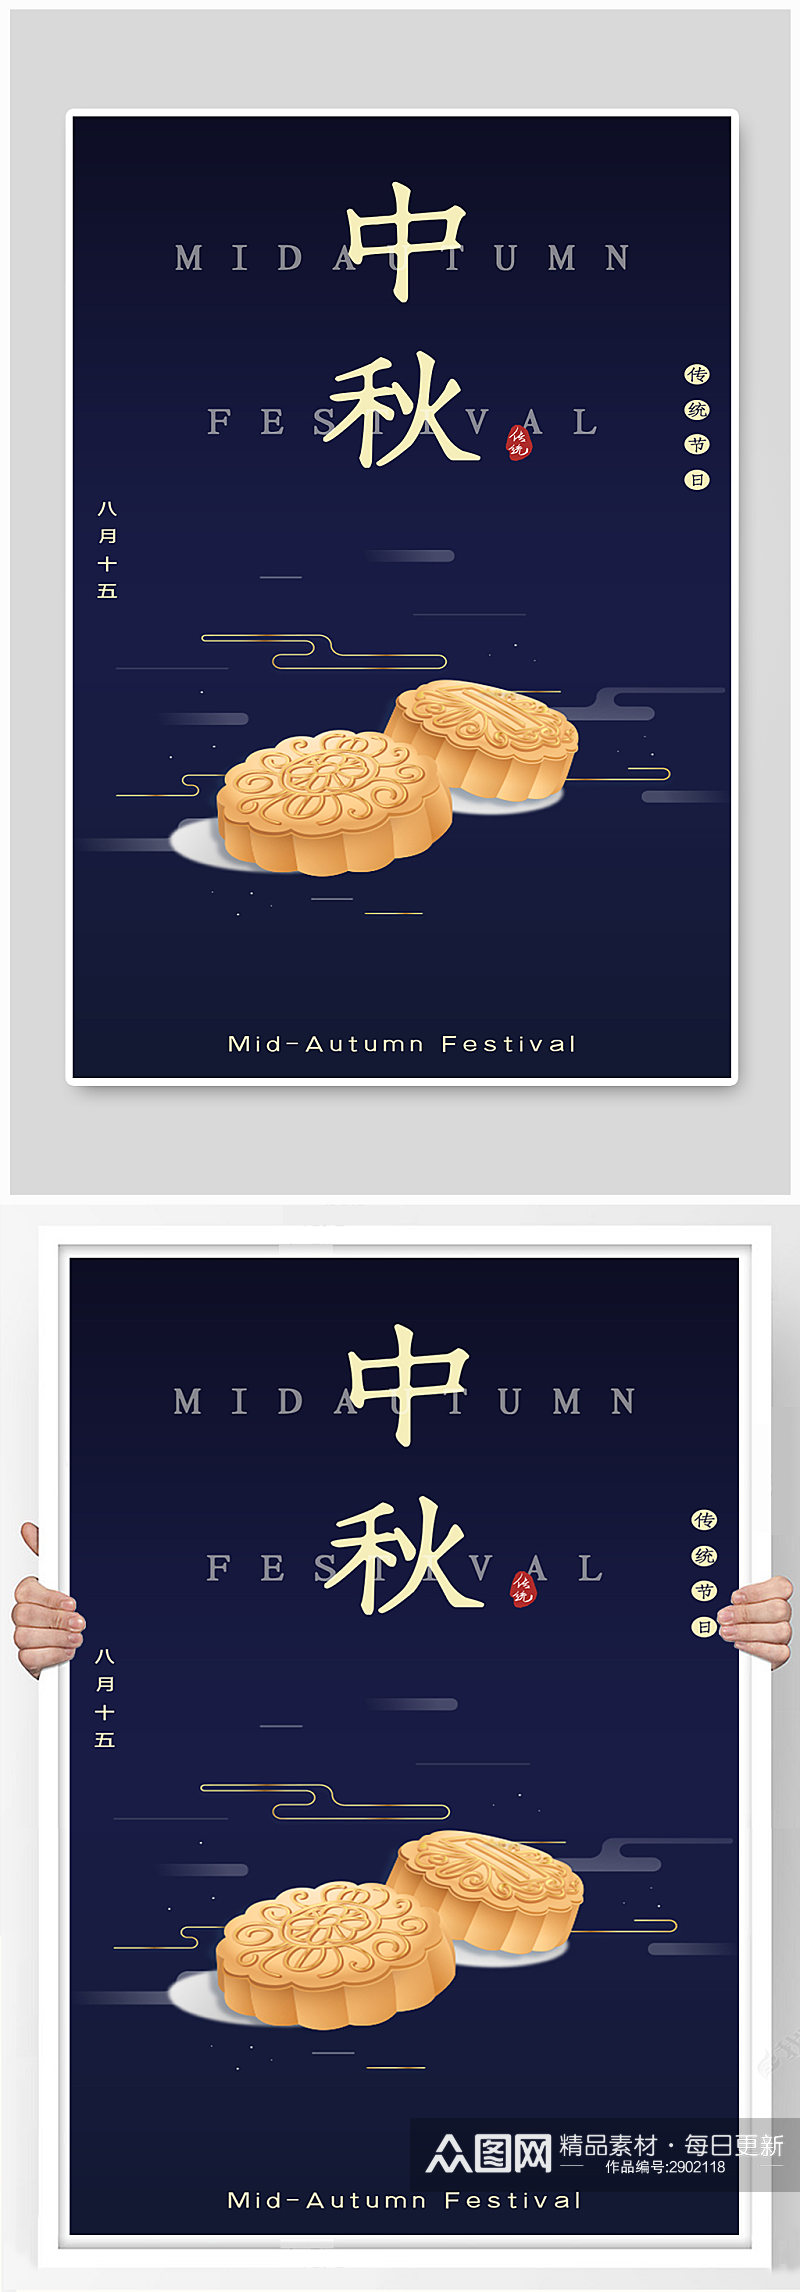 中秋节节日传统佳节月饼海报素材